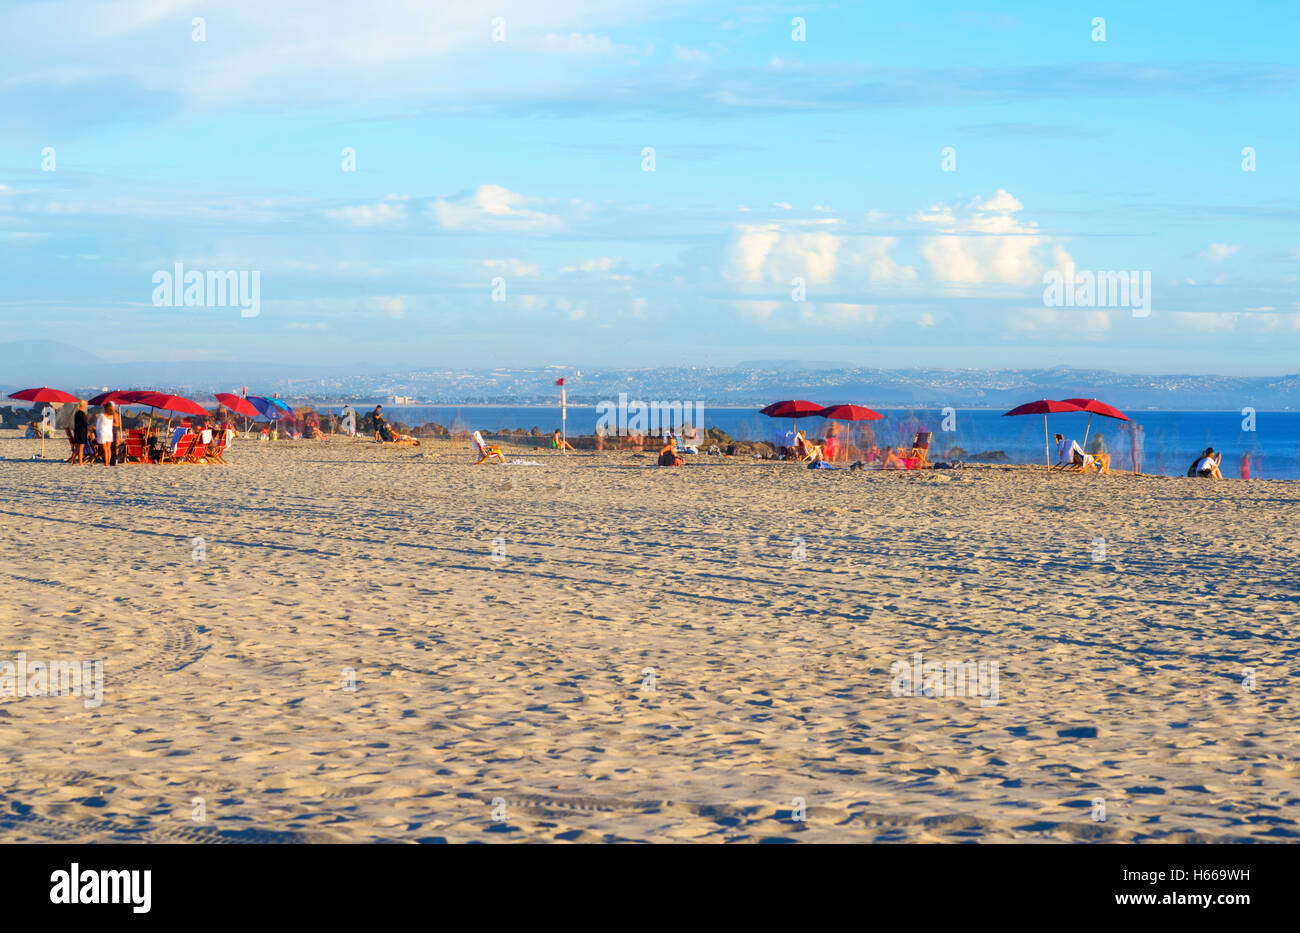 Les parasols, les gens sur la plage centrale de Coronado. Coronado, Californie, USA. Banque D'Images